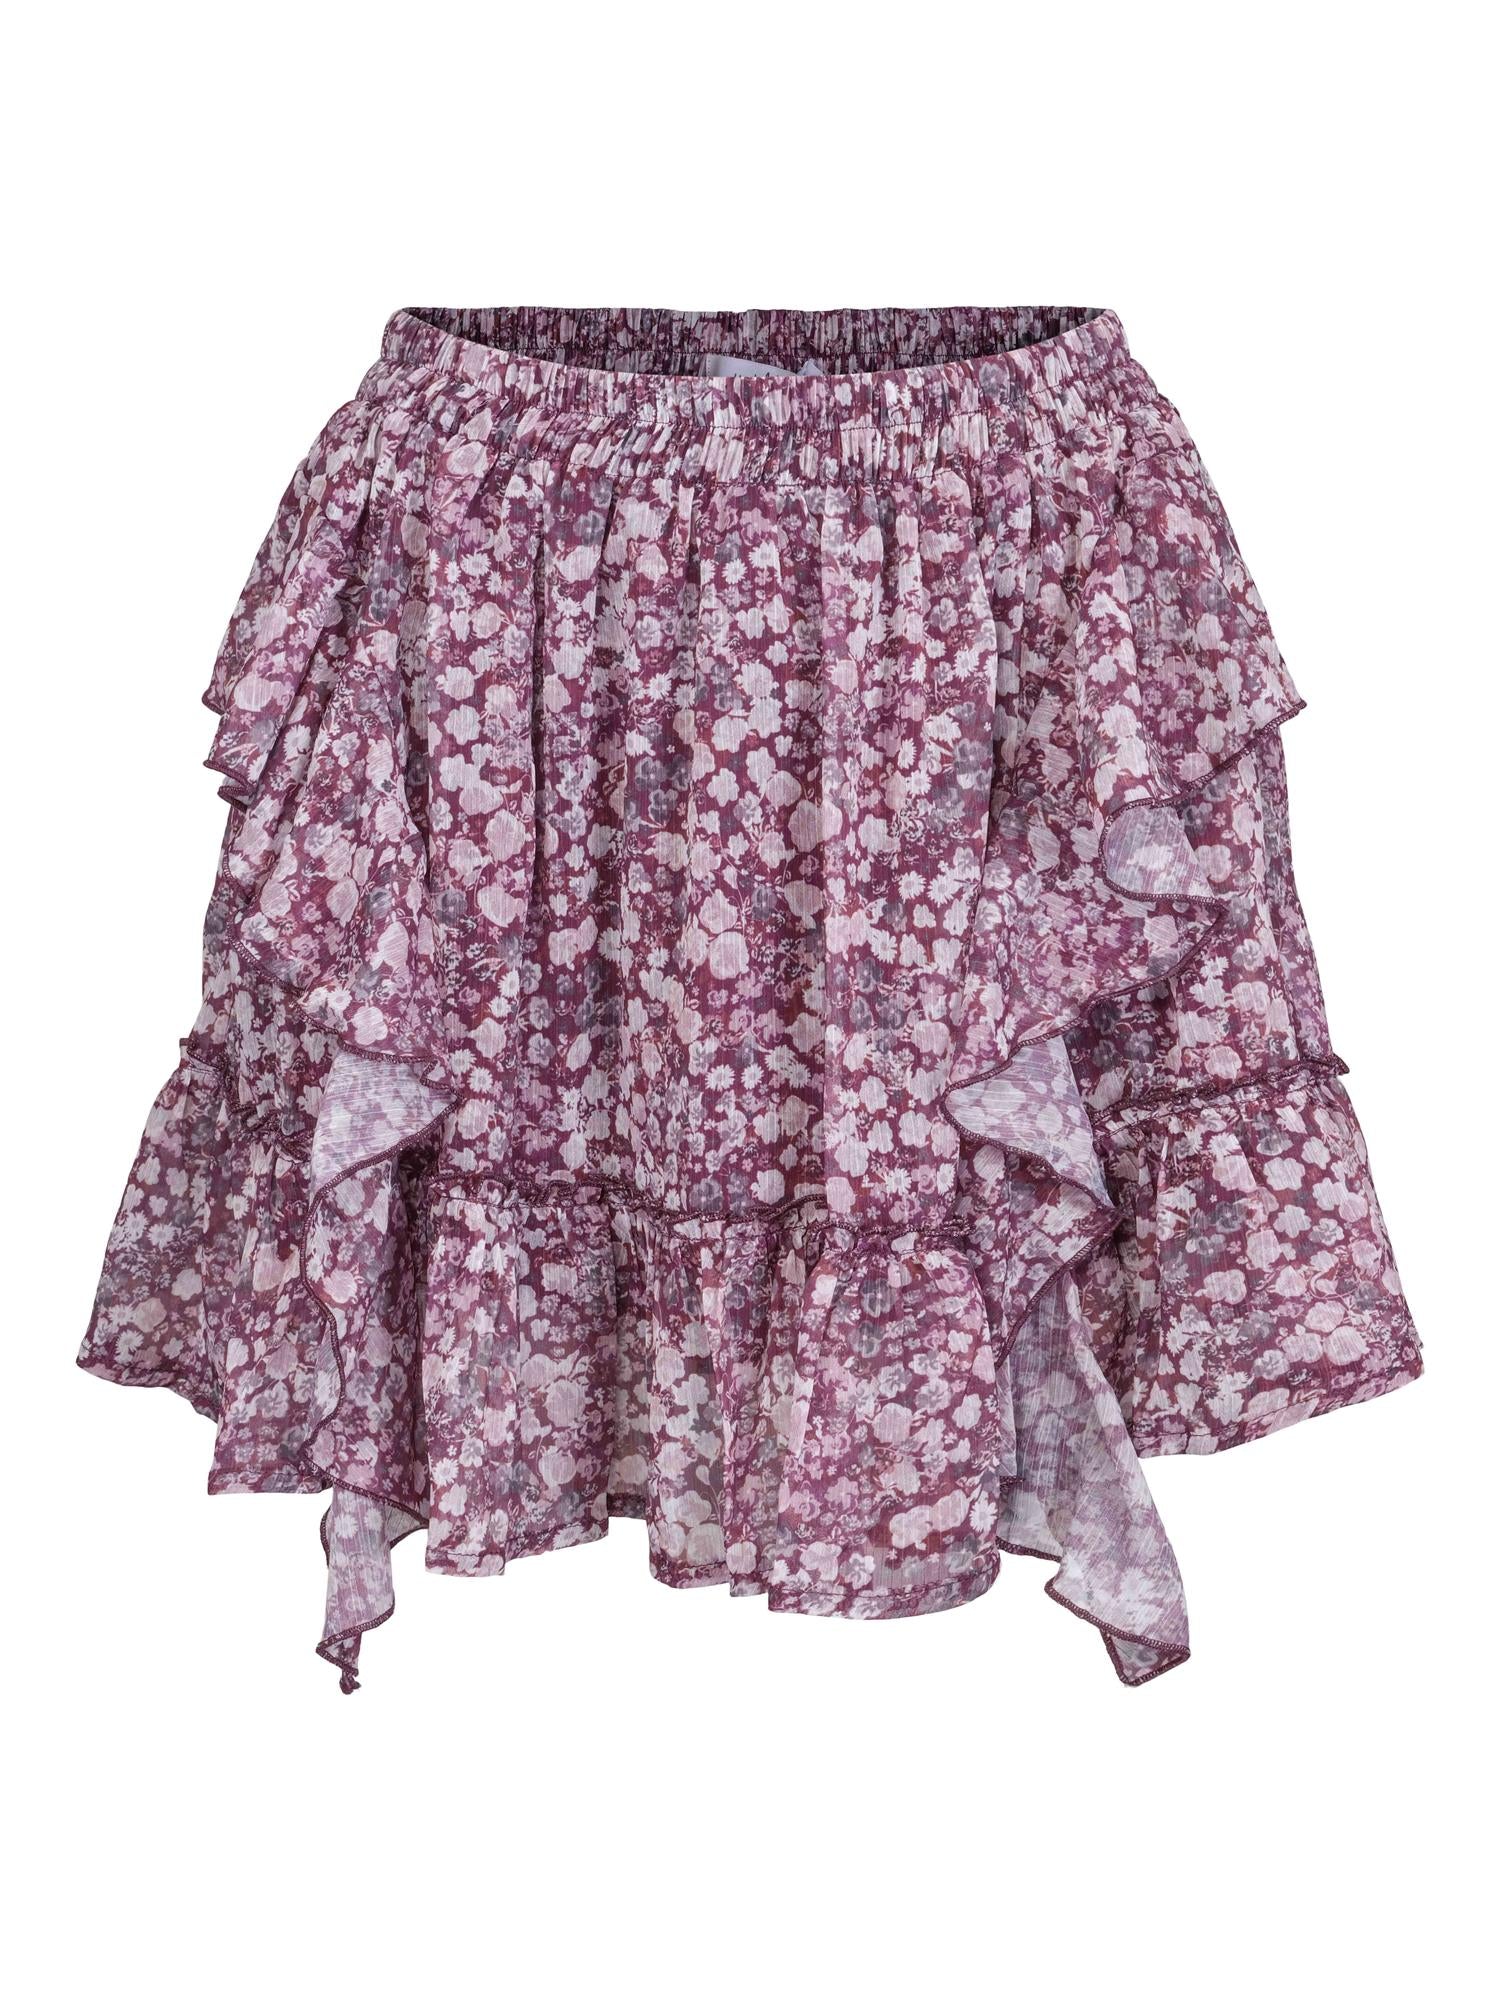 Nala Skirt